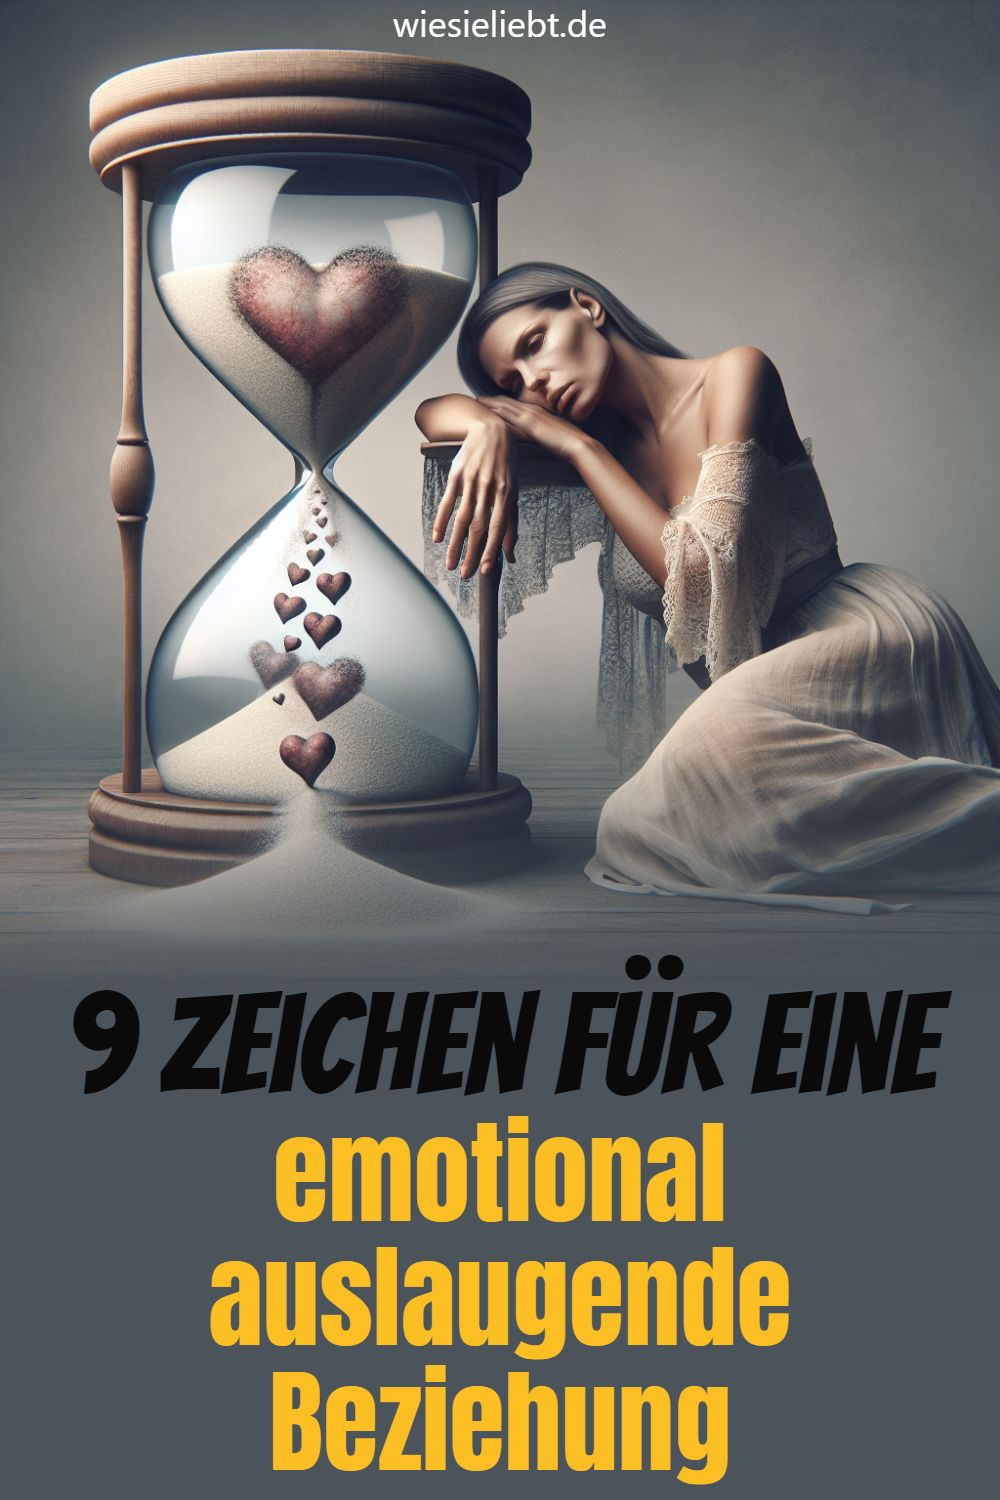 9 Zeichen für eine emotional auslaugende Beziehung